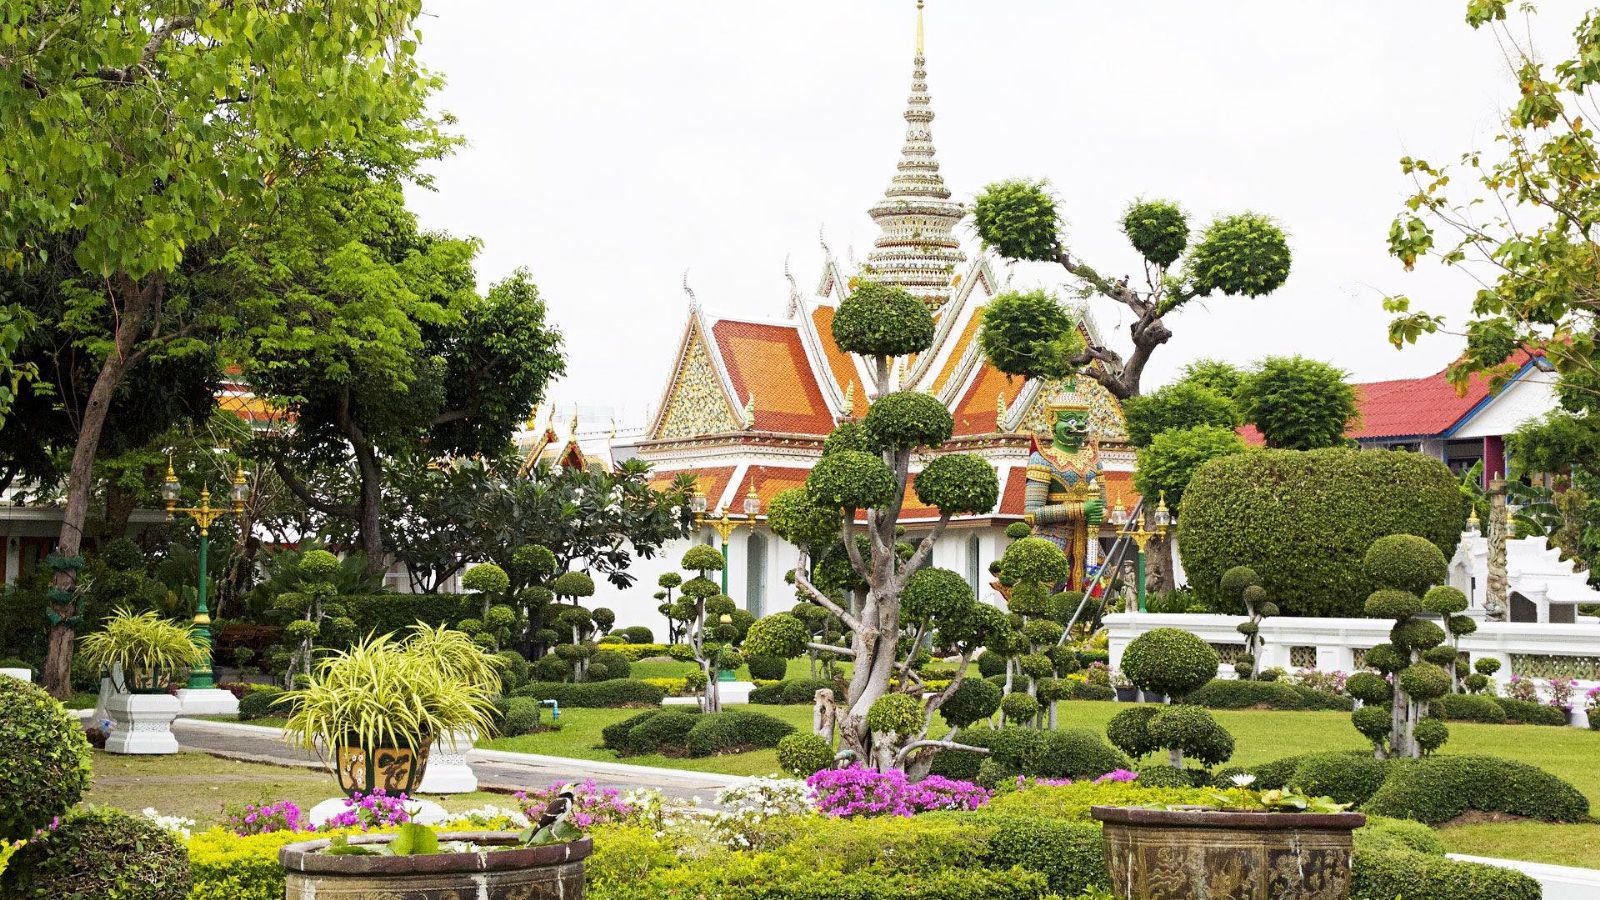 Du finder smukke templer overalt i Thailand